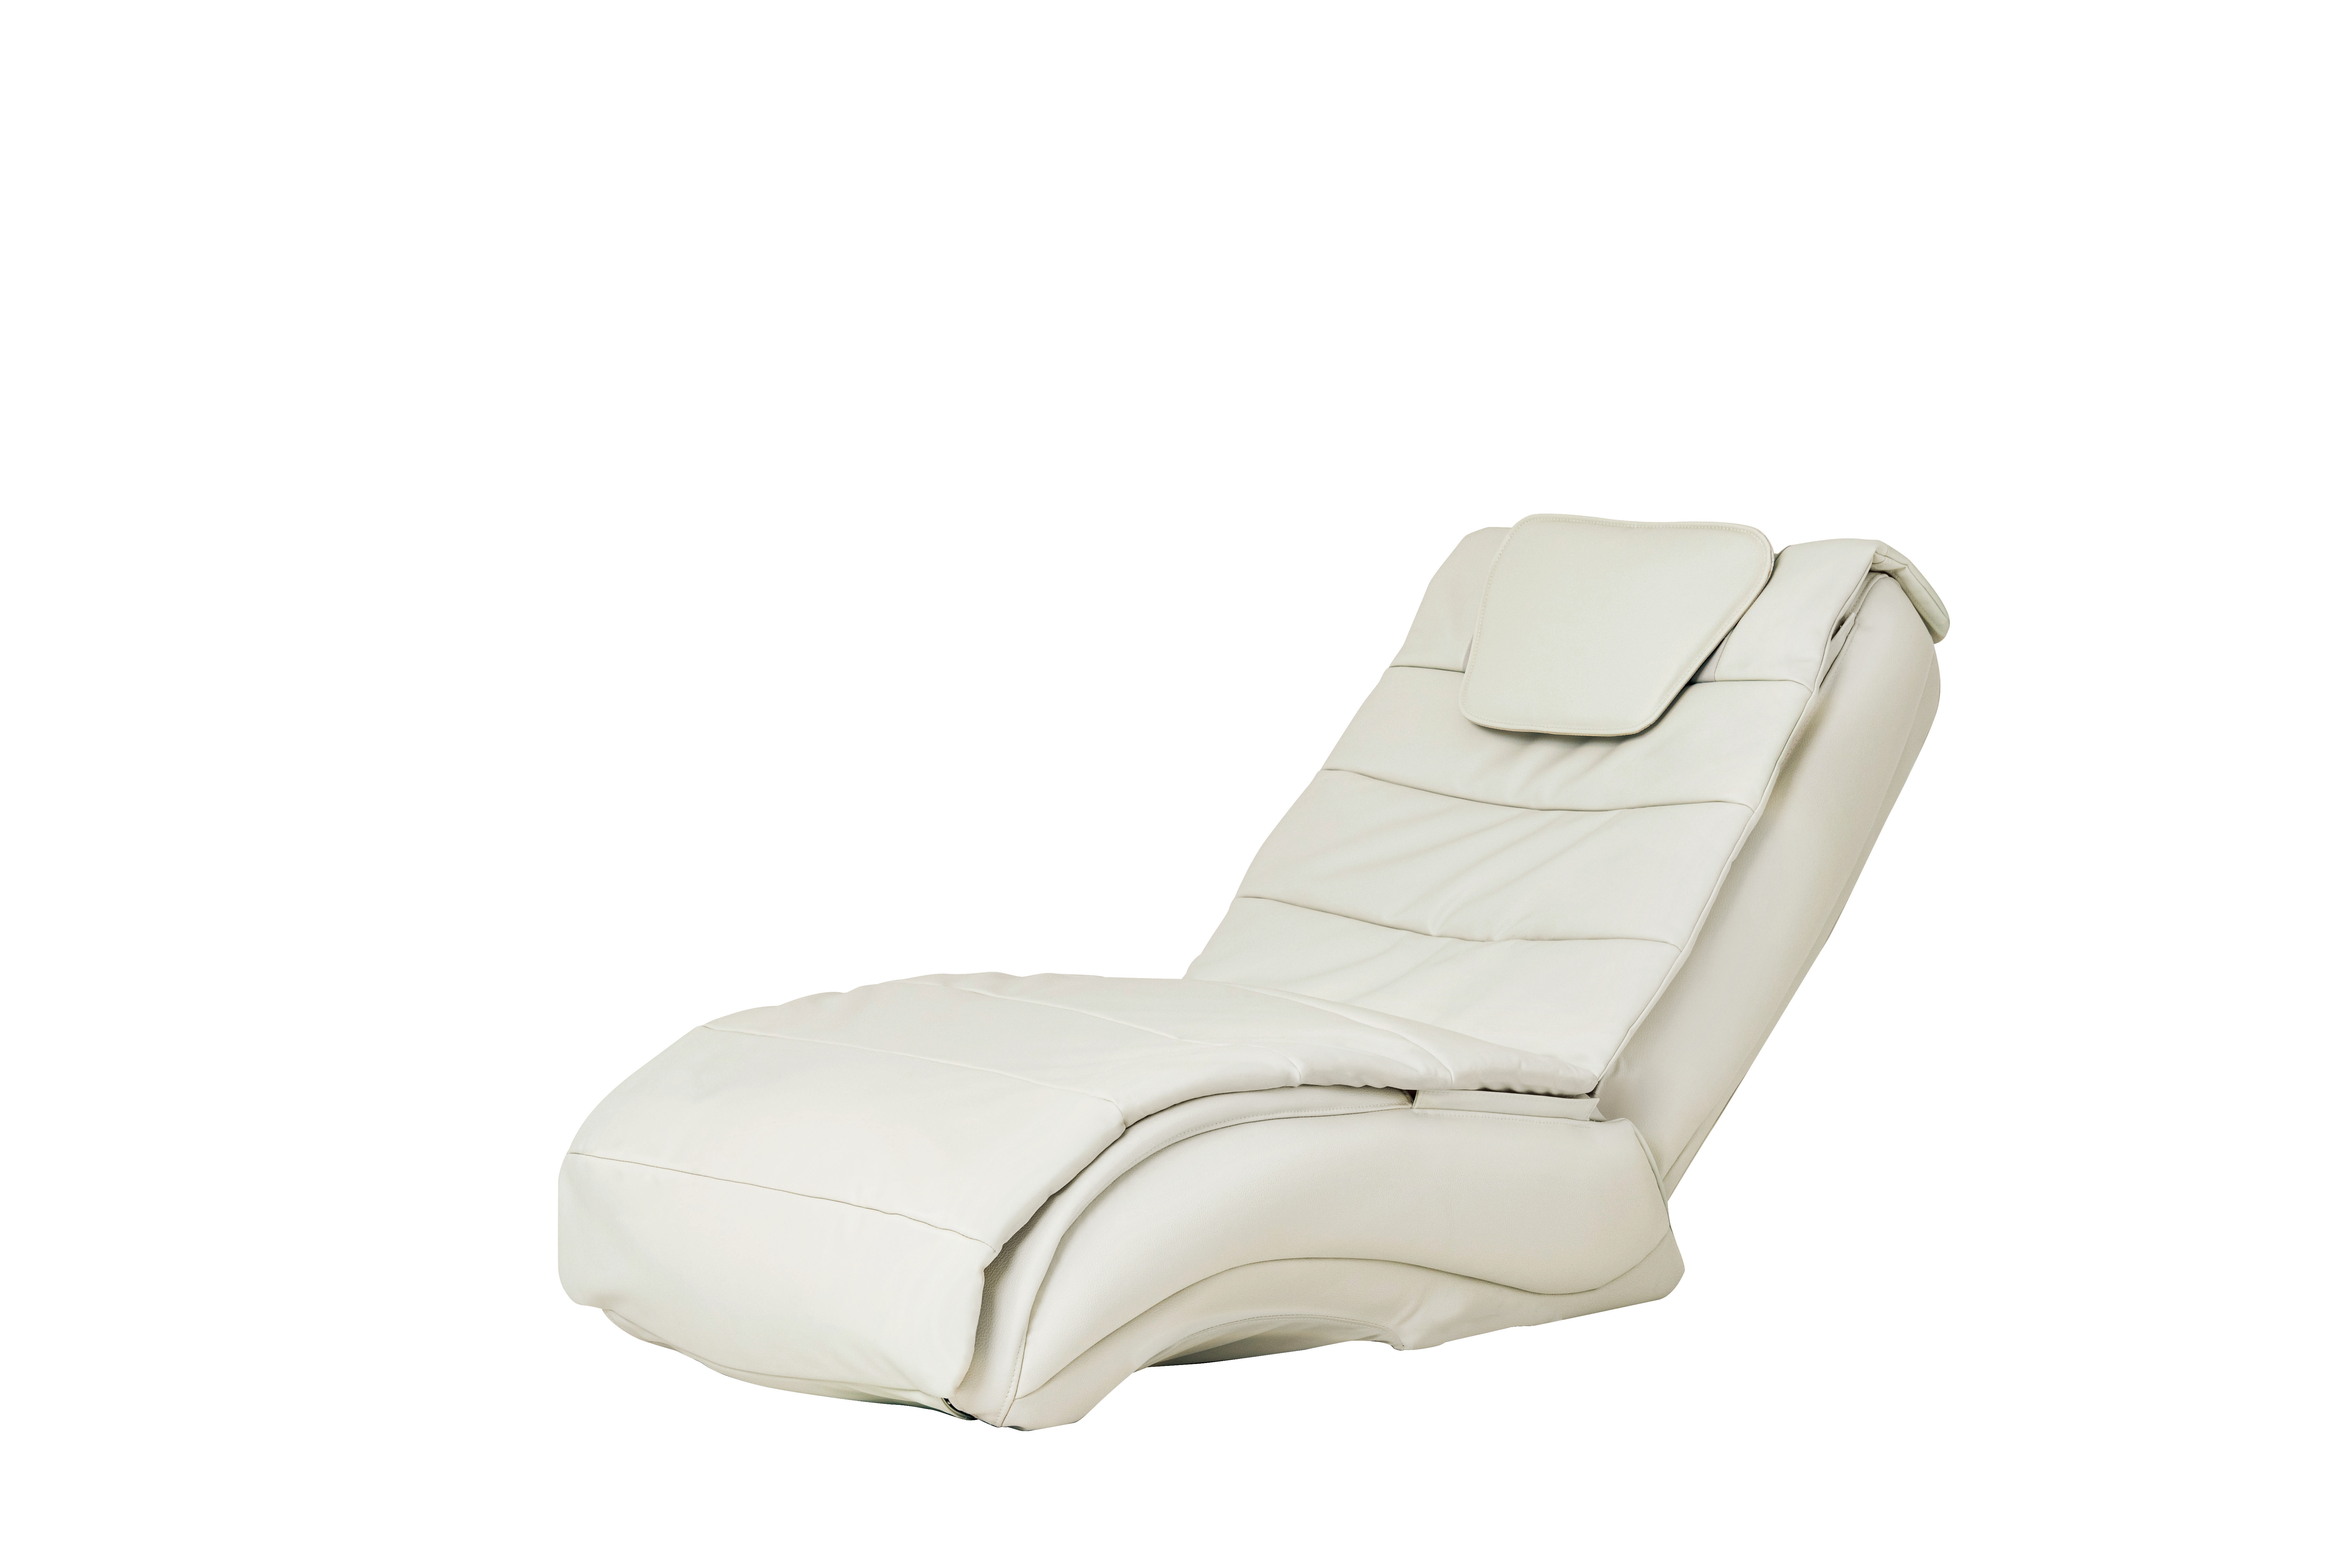 ファミリーイナダ至上No.1ロングセラー商品「Wエンジン」にAI搭載 新商品「Vita(ヴィータ)」「Body Care Chair(ボディケアチェア )」2020年11月上旬より発売予定｜ファミリーイナダ株式会社のプレスリリース